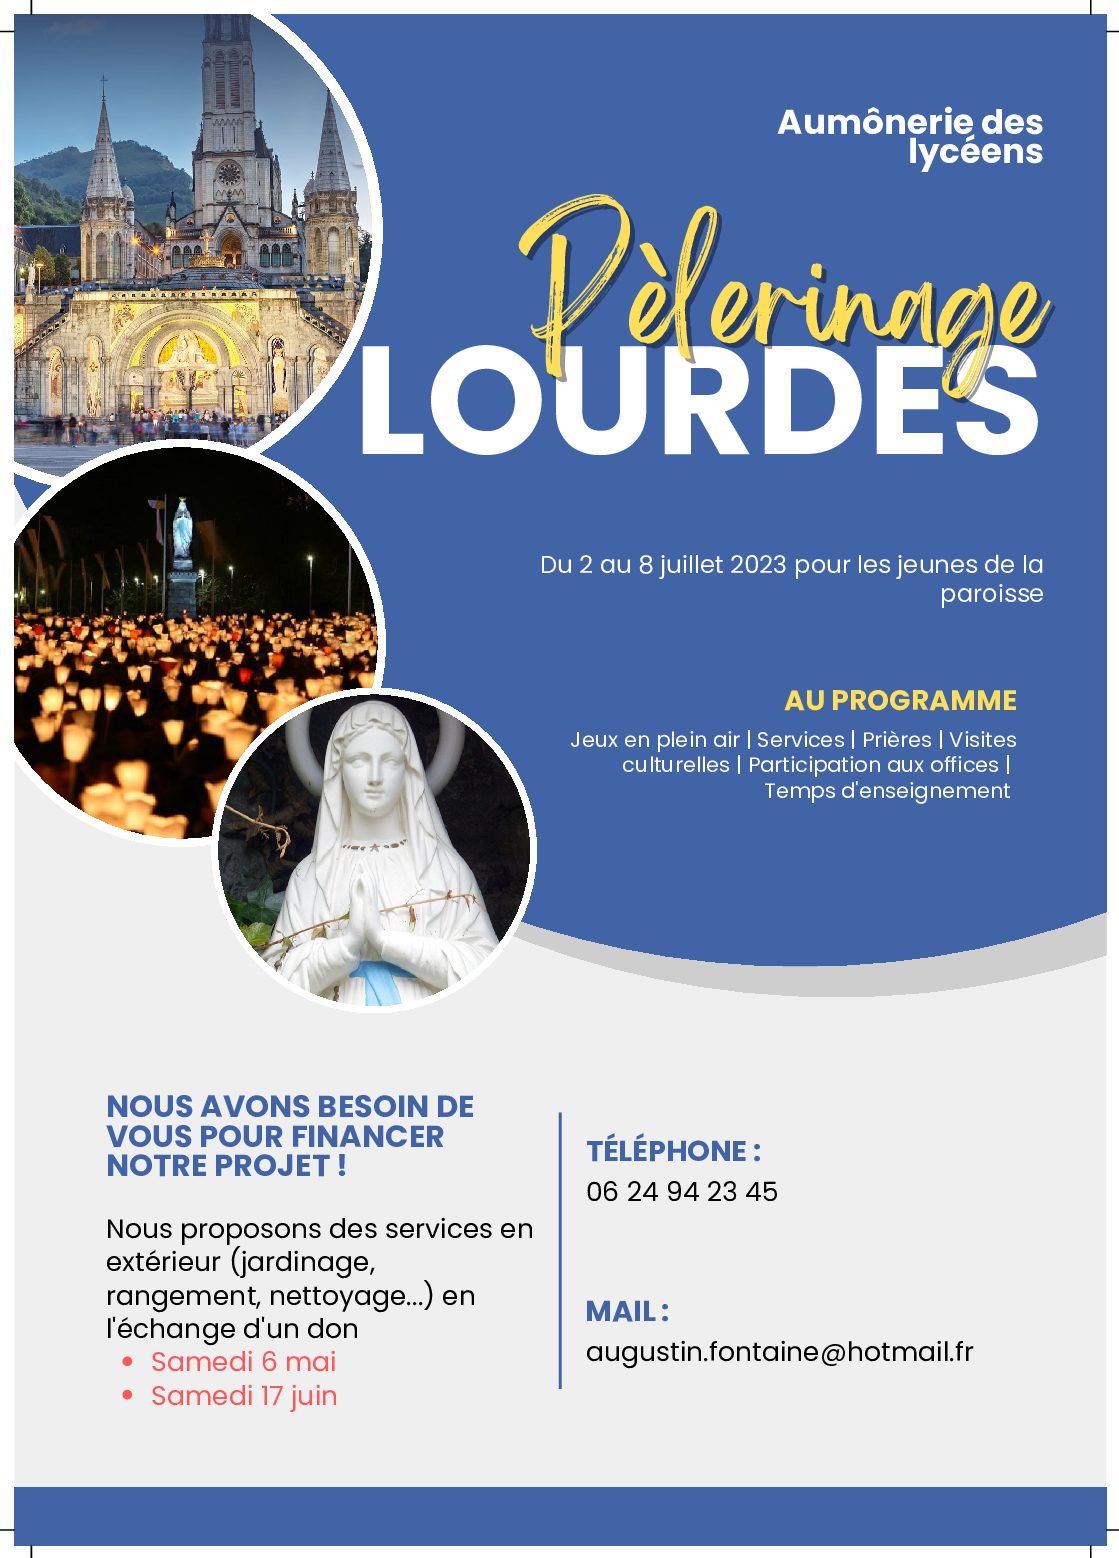 Pèlerinage des aumôneries à Lourdes 2023 – proposition de services pour financer le projet